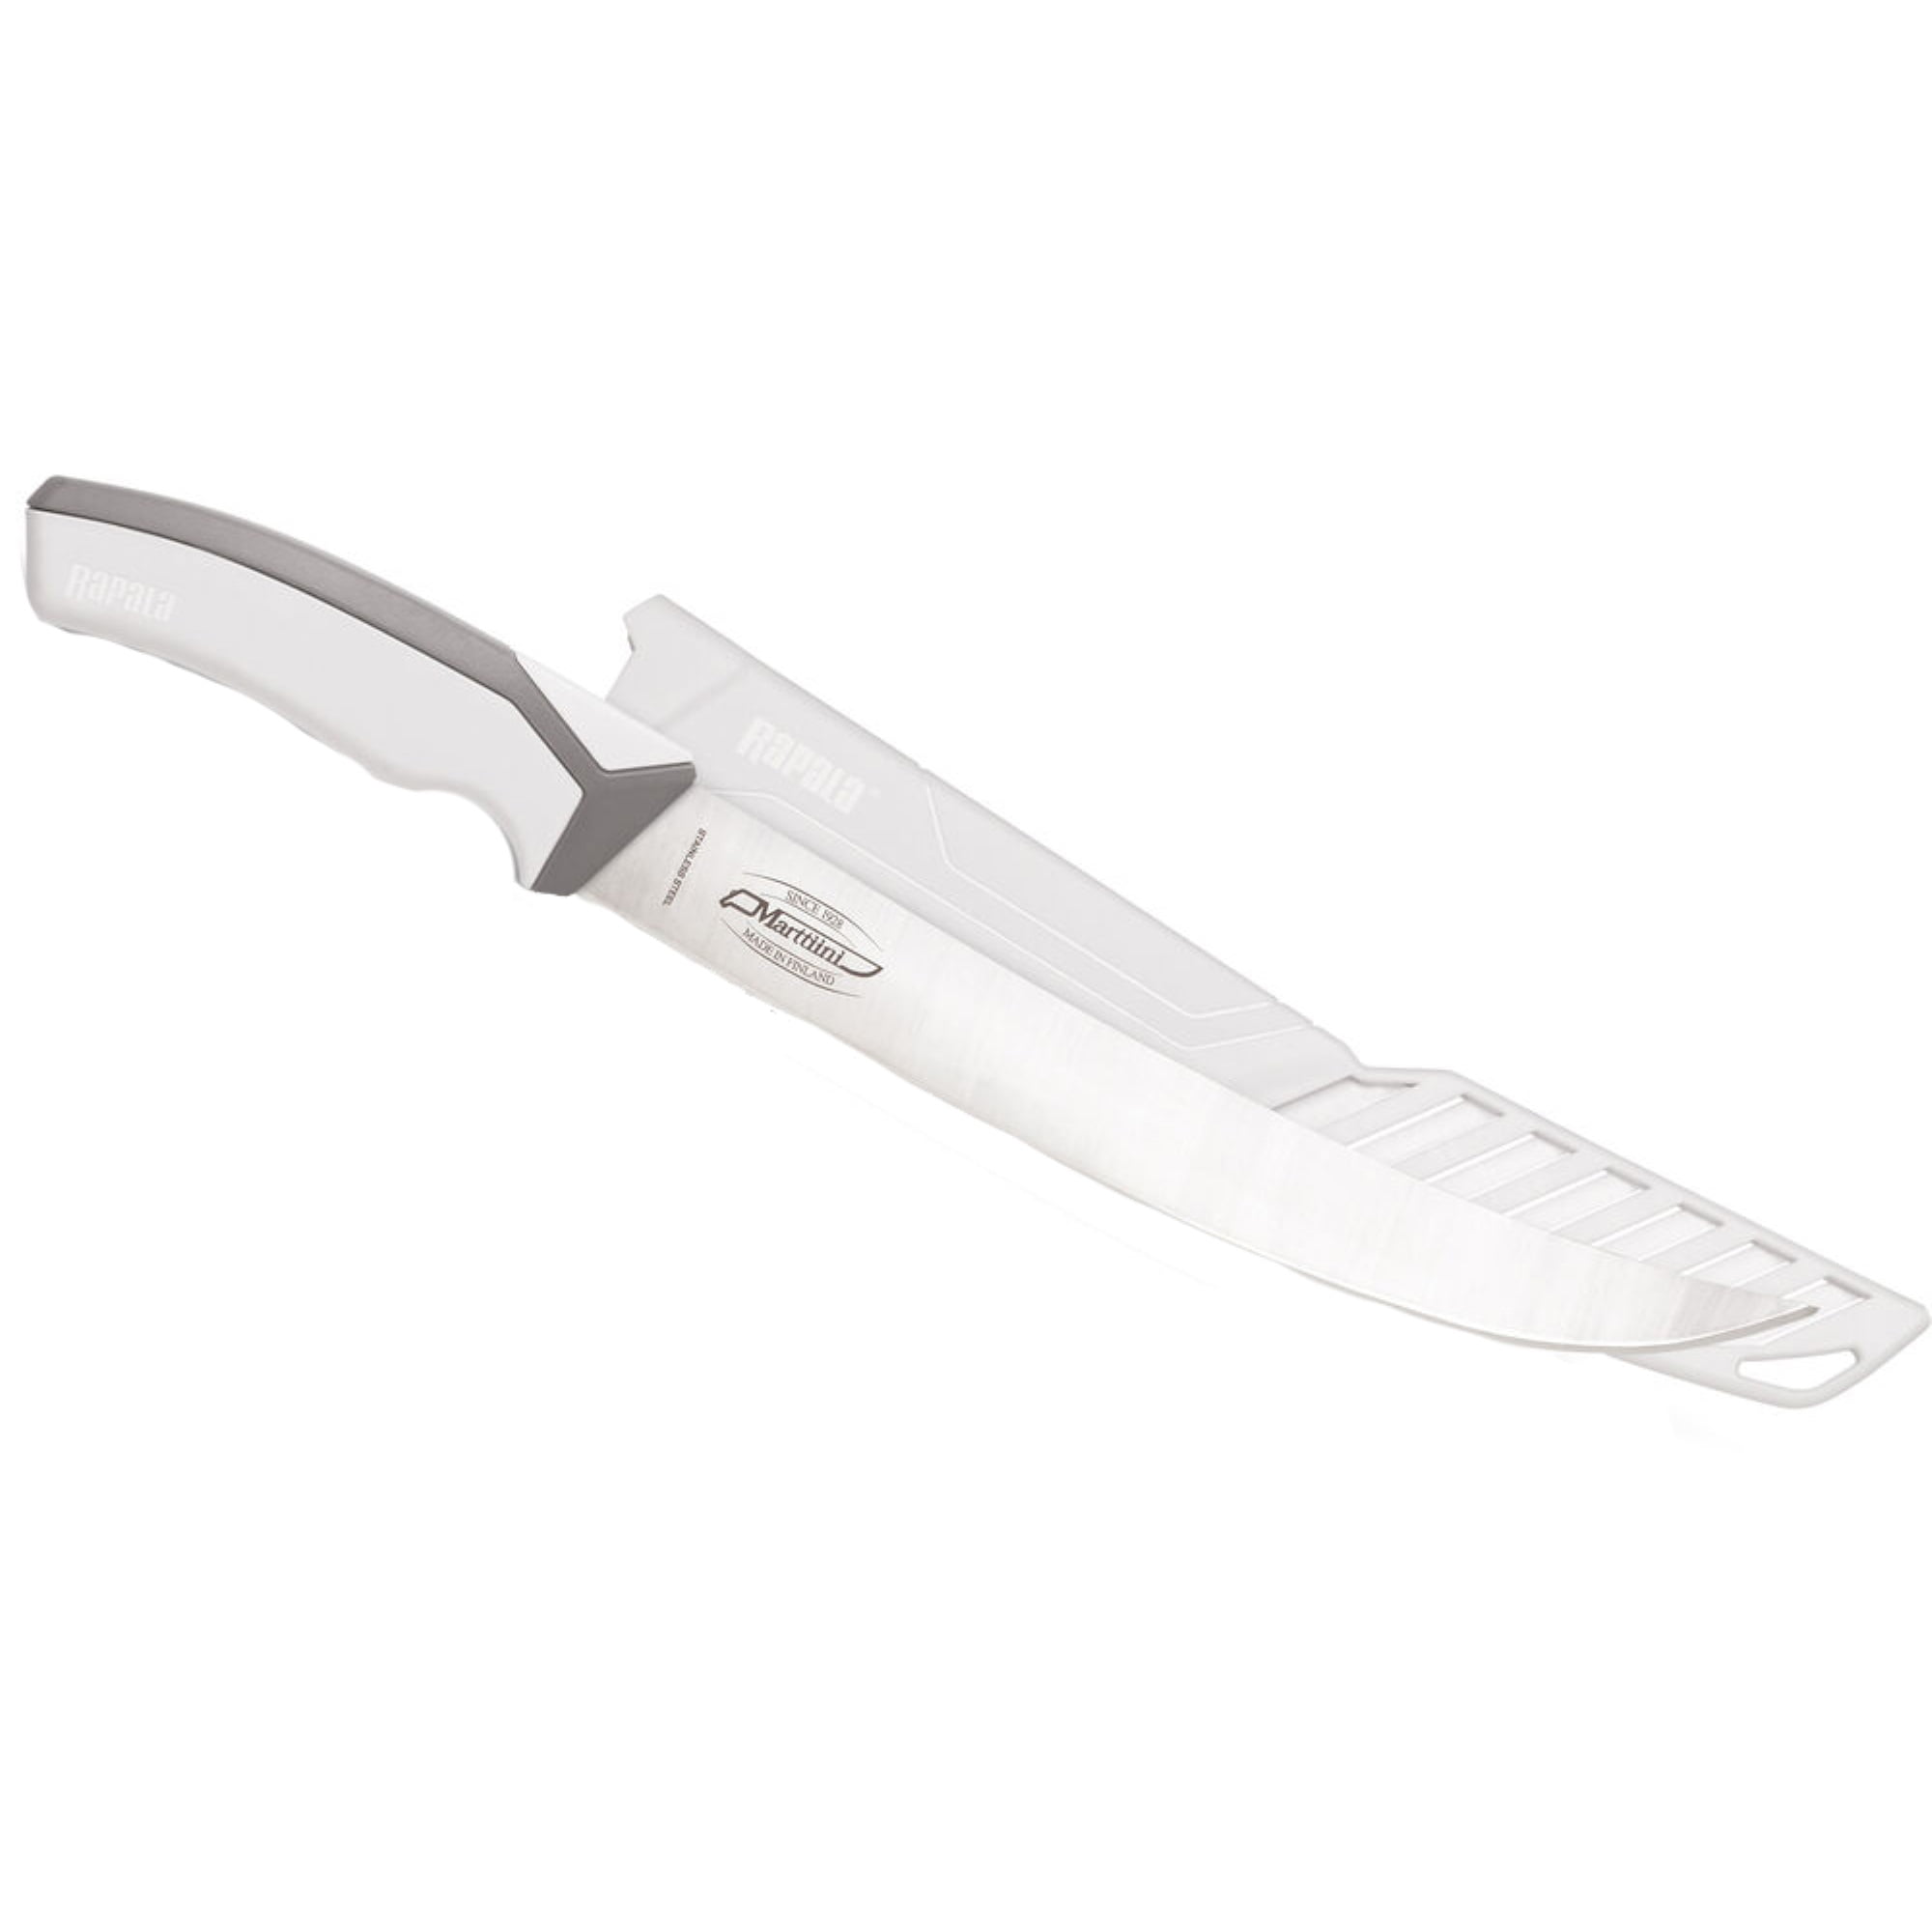 Big Fillet Knife, 12-inch Curved